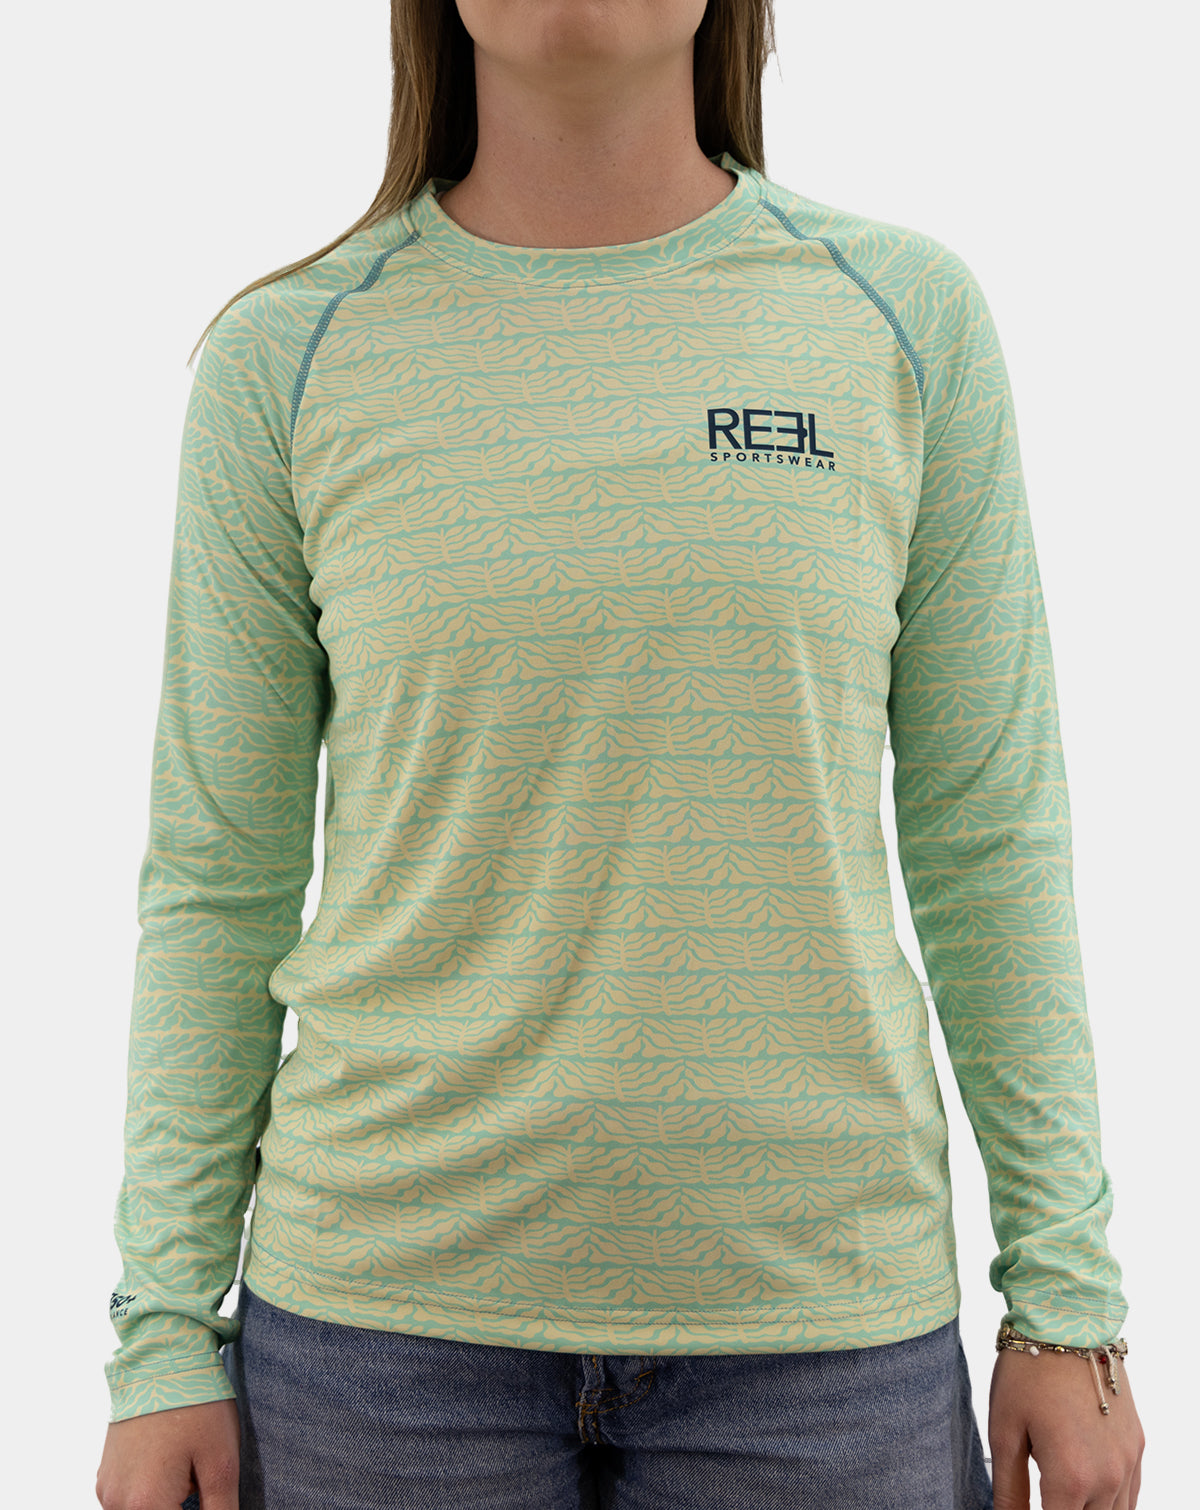 Raeni  Green - Reel Sportswear